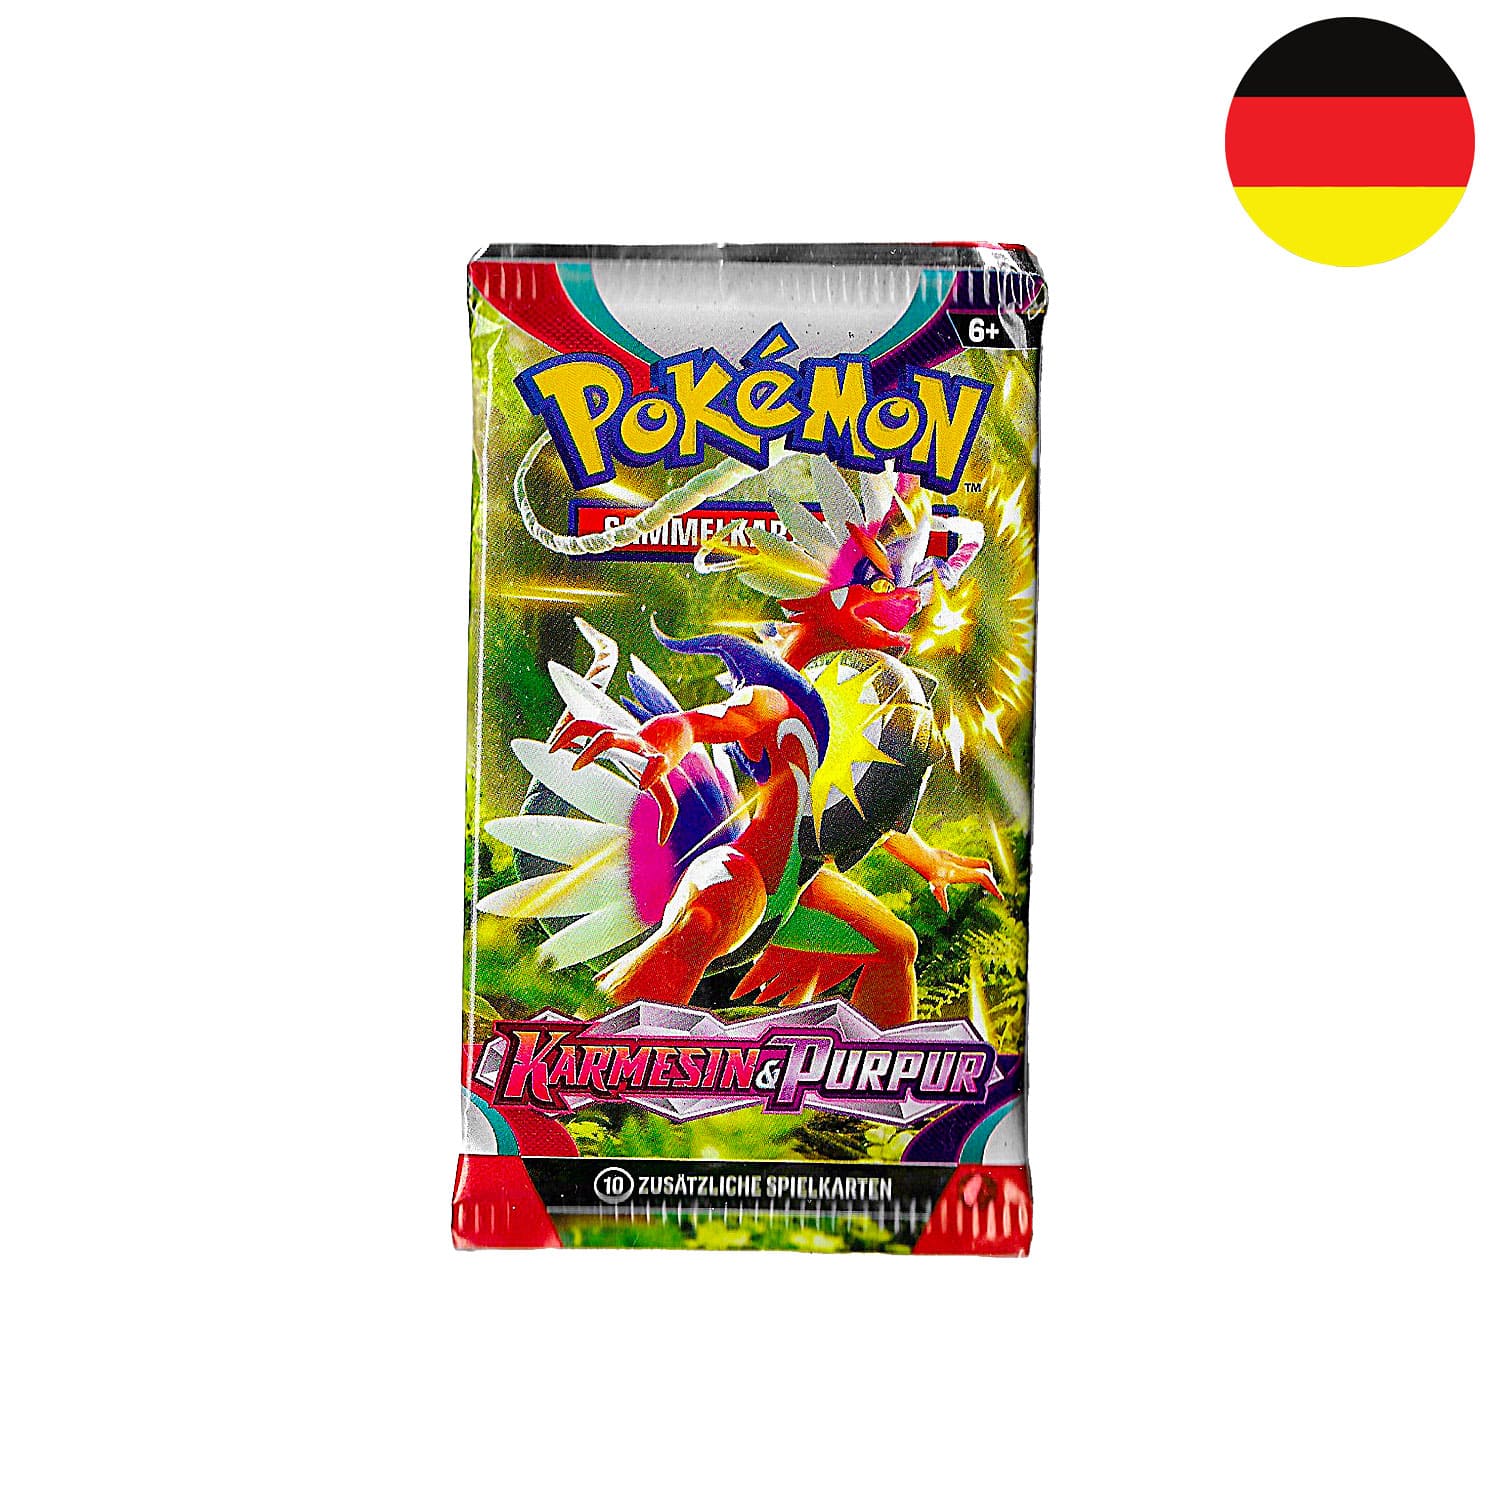 Das Pokemon Boosterpack Karmesin & Purpur (KP01) als Scan, mit Miraidon, mit der Flagge Deutschlands in der Ecke.